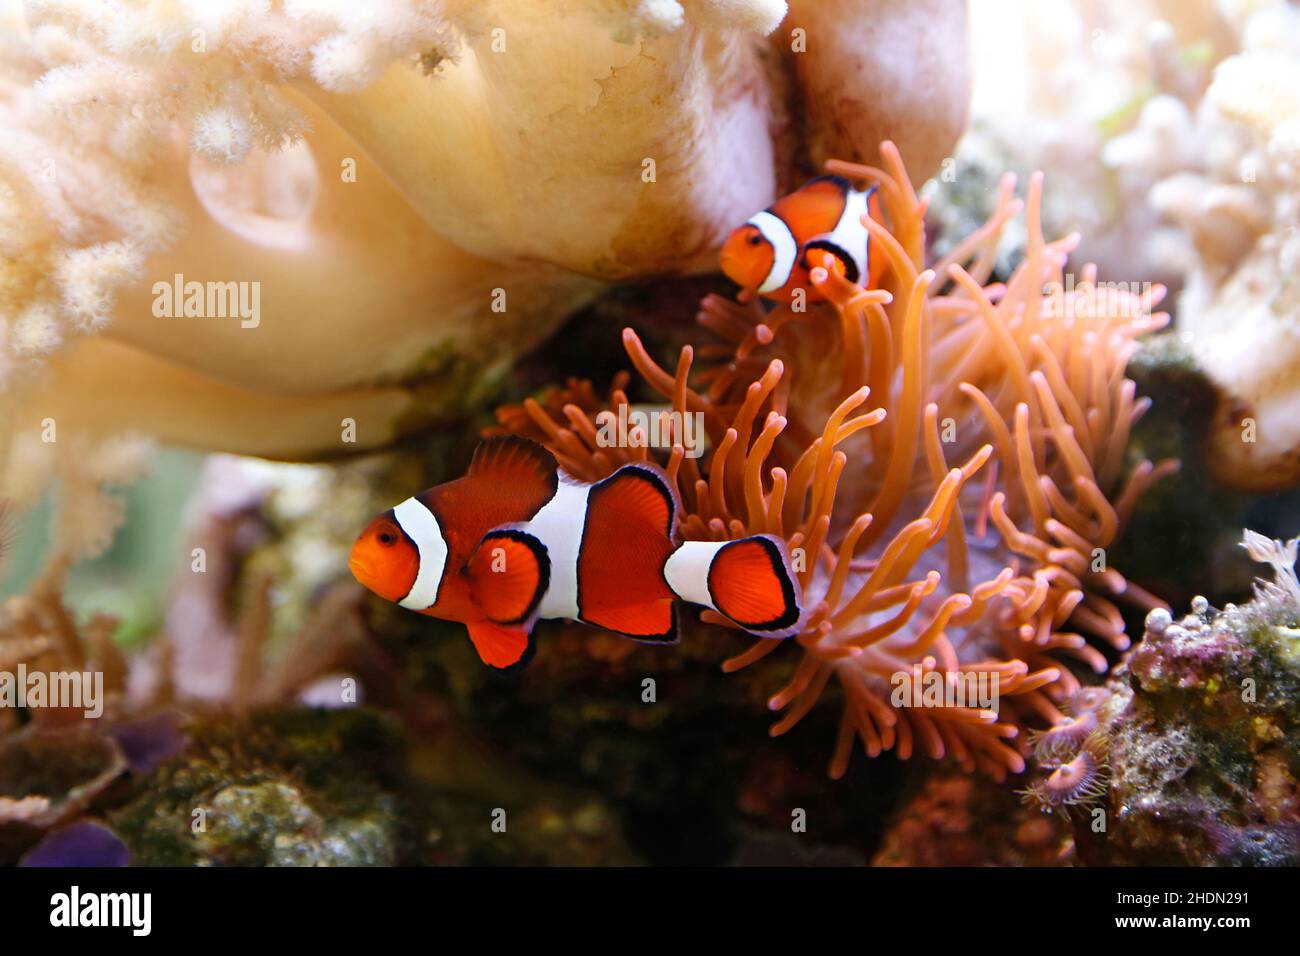 anemonefish, clown fish, anemonefishs, clown fishs Stock Photo